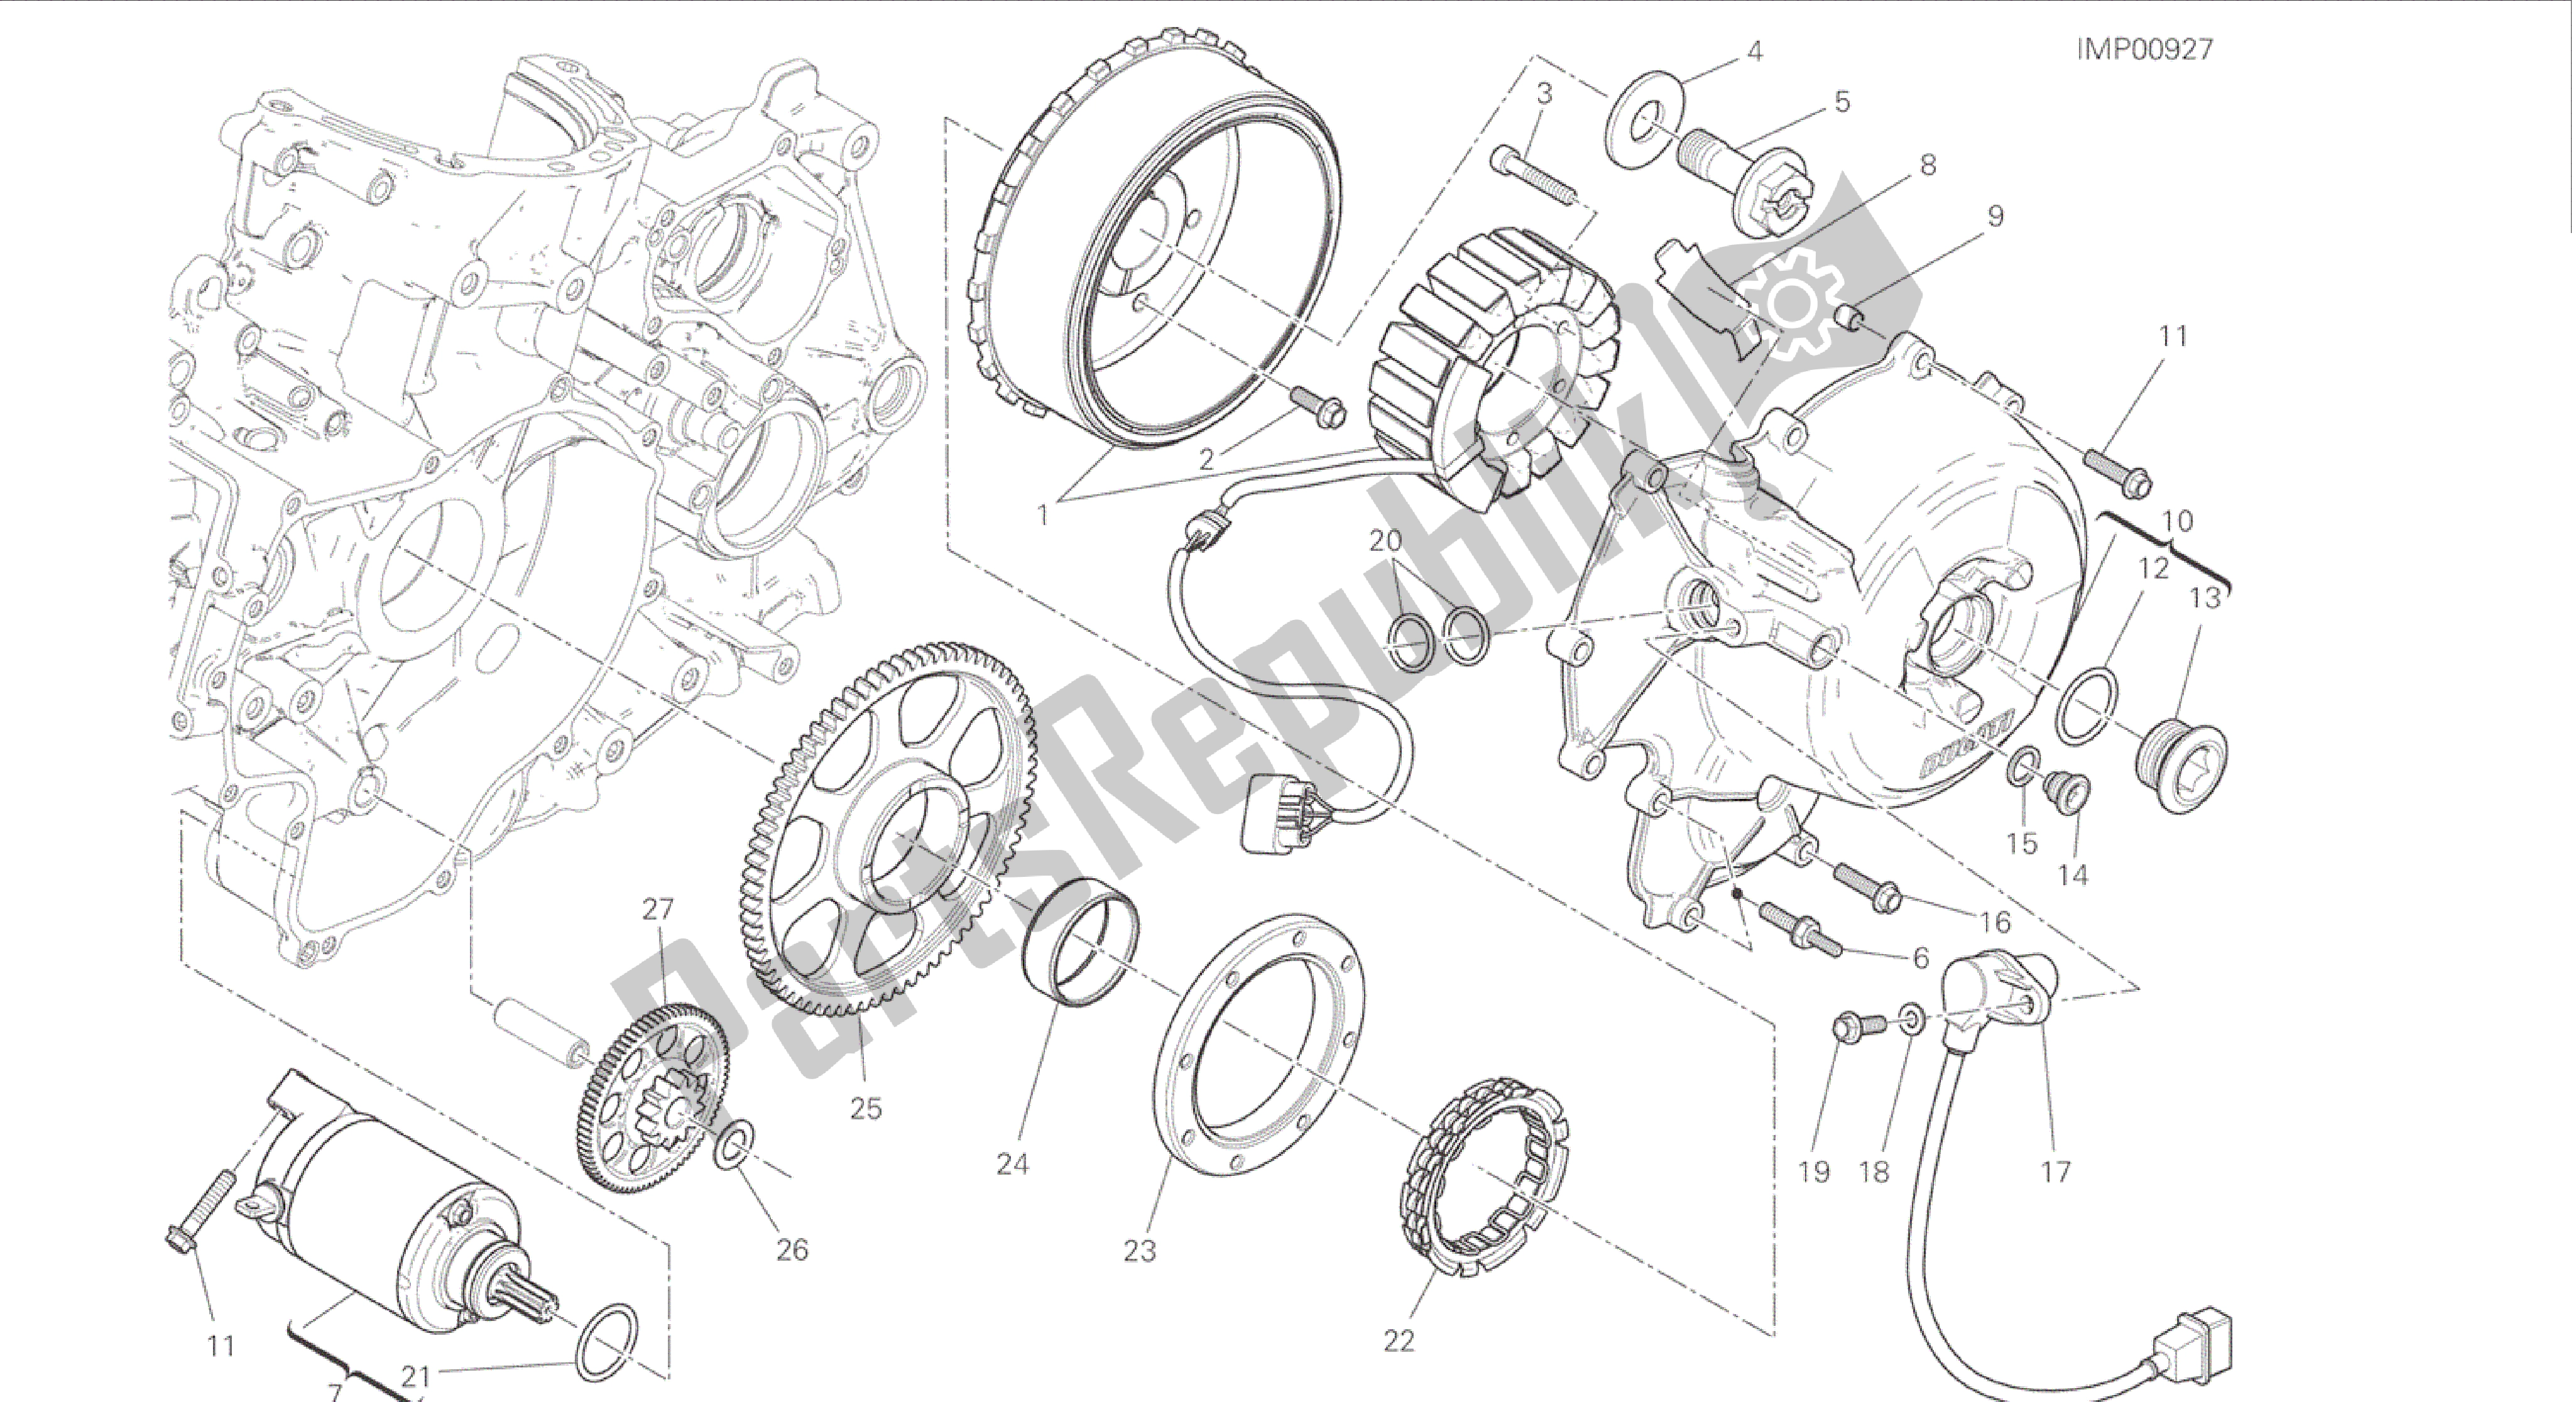 Todas las partes para Dibujo 012 - Arranque Eléctrico Y Encendido [mod: 899 Abs, 899 Aws] Motor De Grupo de Ducati Panigale 899 2015